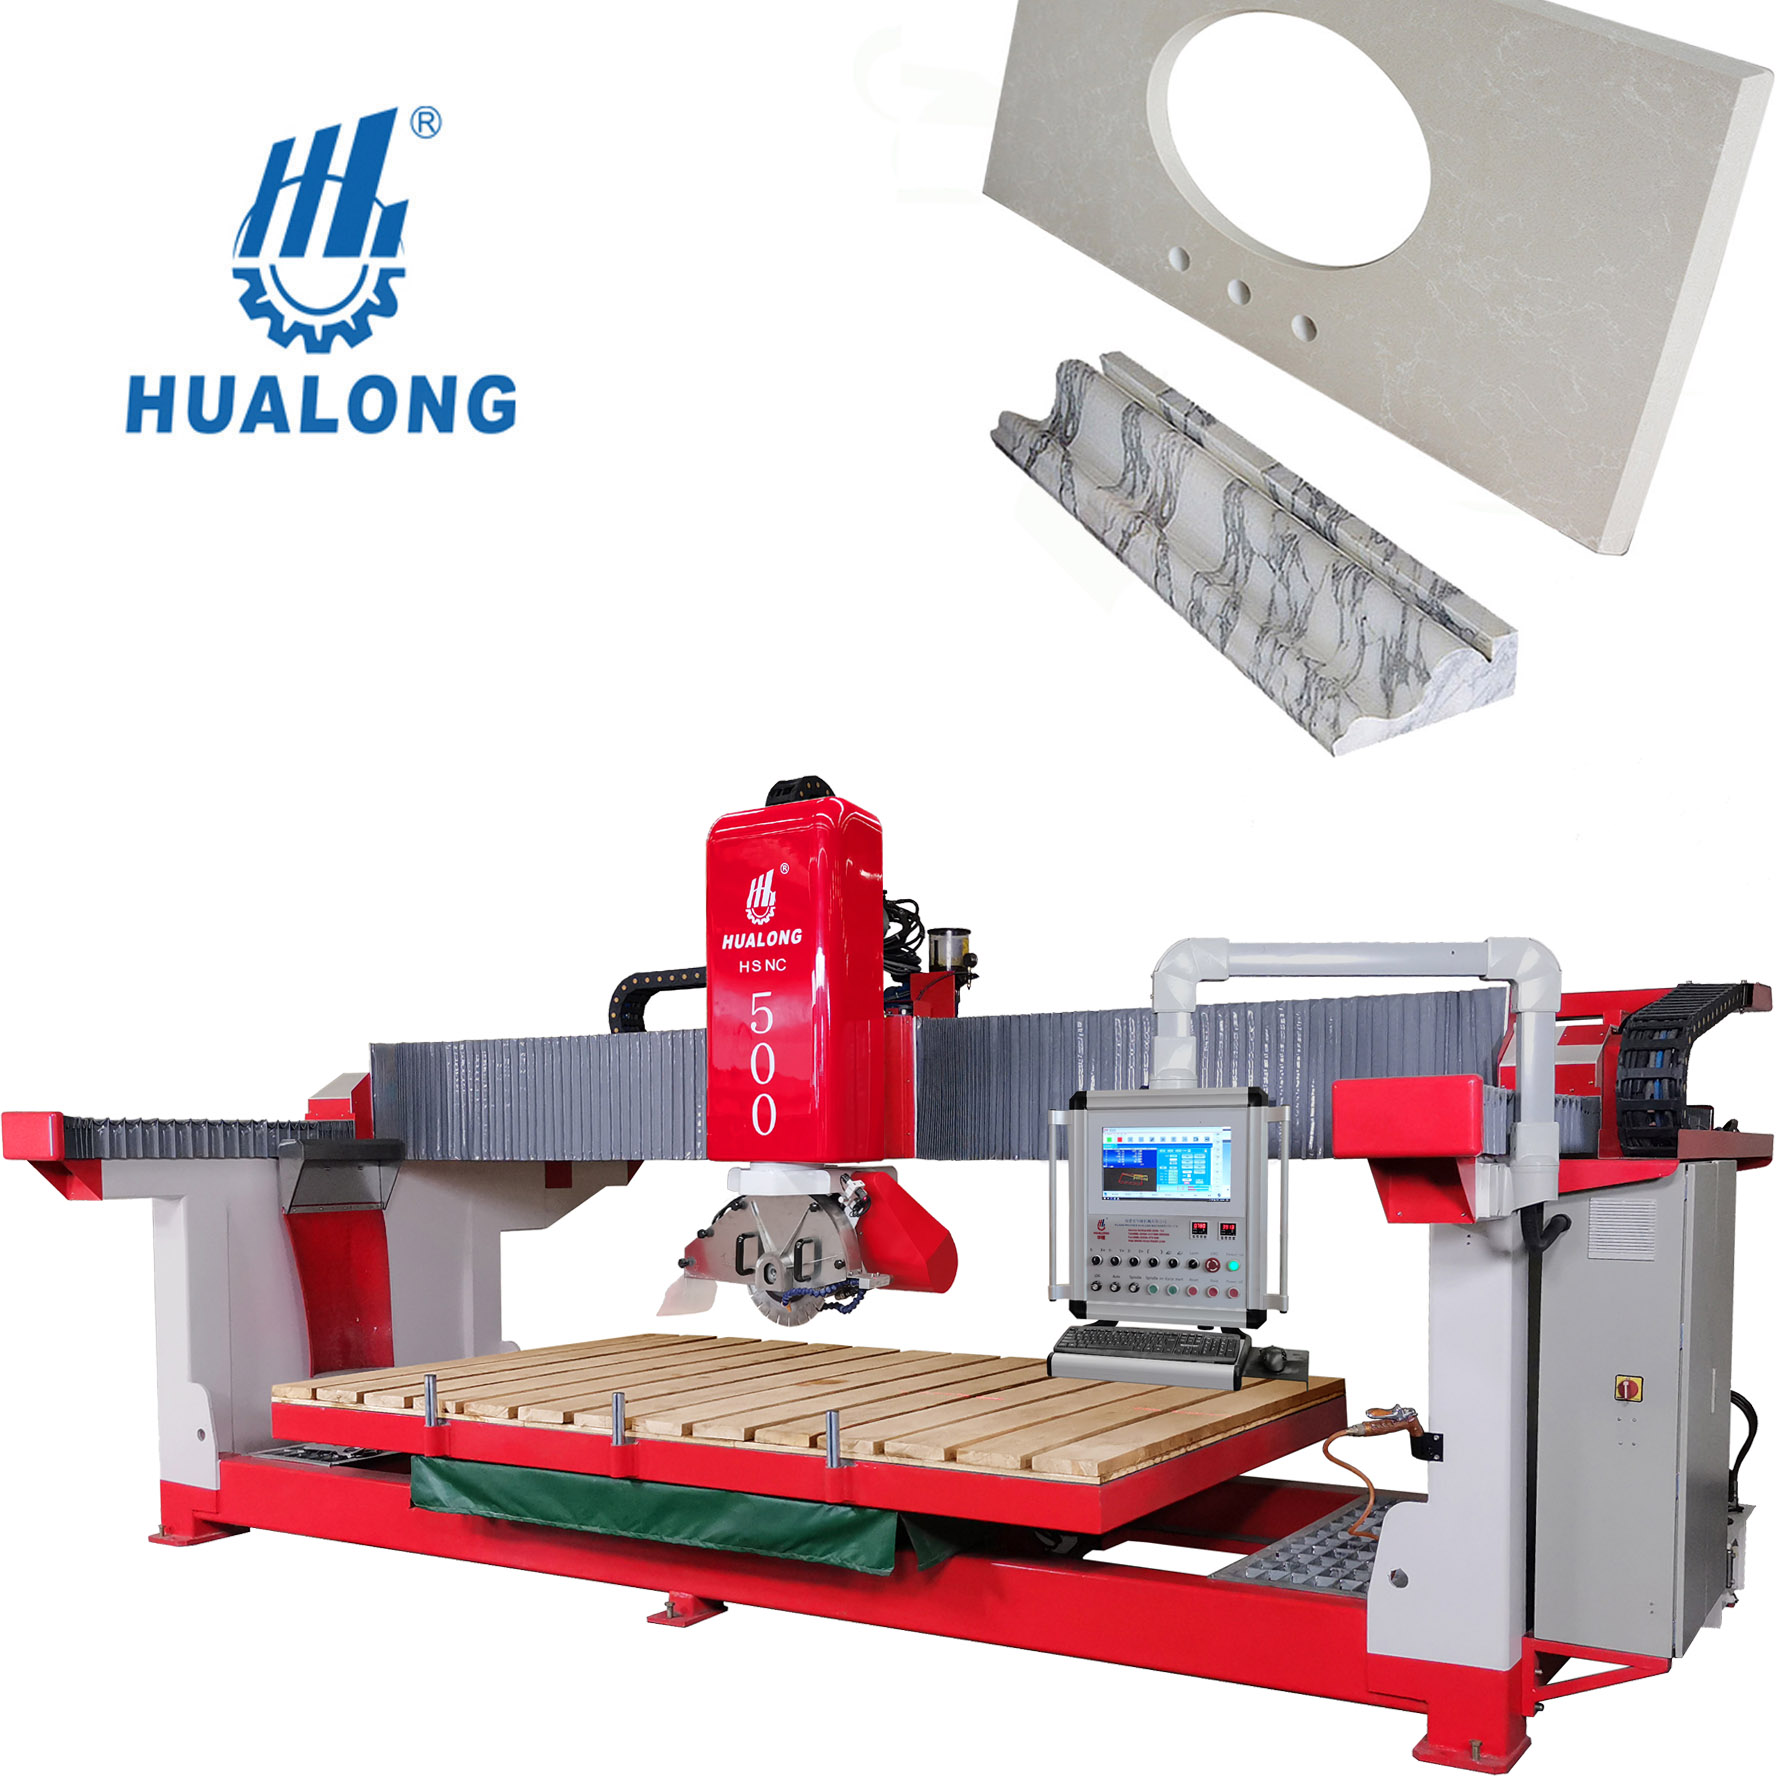 Hualong Machinery HSNC-500 Cortadora de piedra de puente totalmente automática con función de fresado de encimera